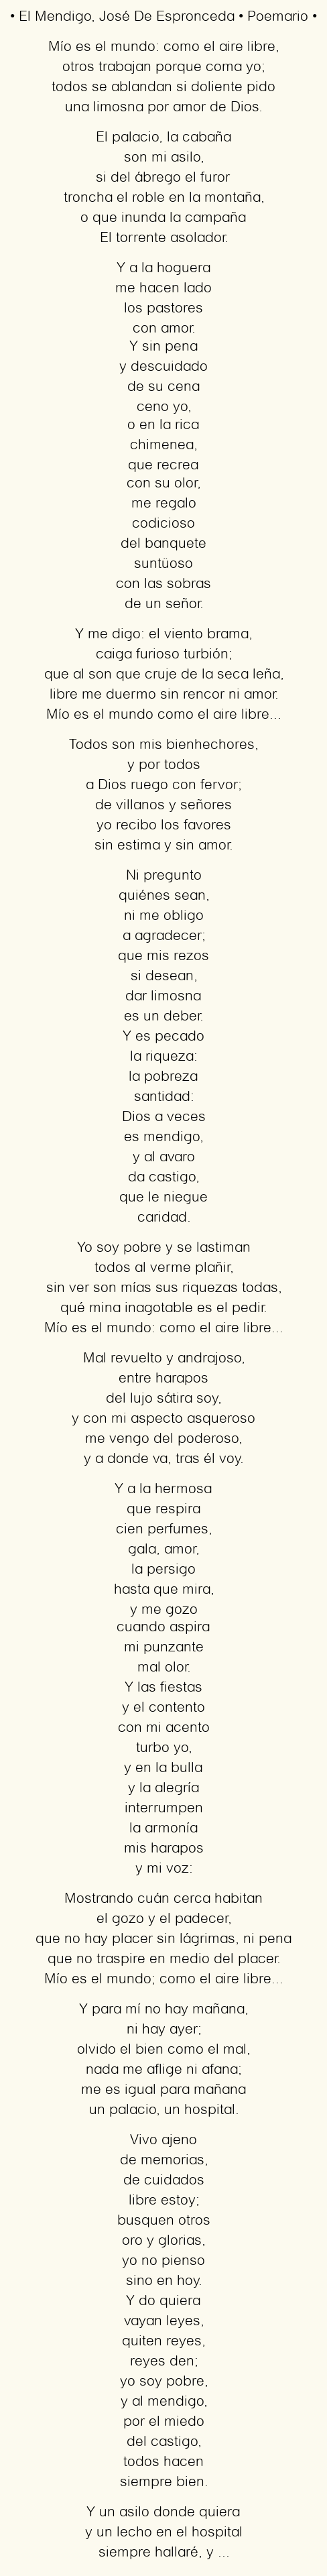 Imagen con el poema El Mendigo, por José De Espronceda